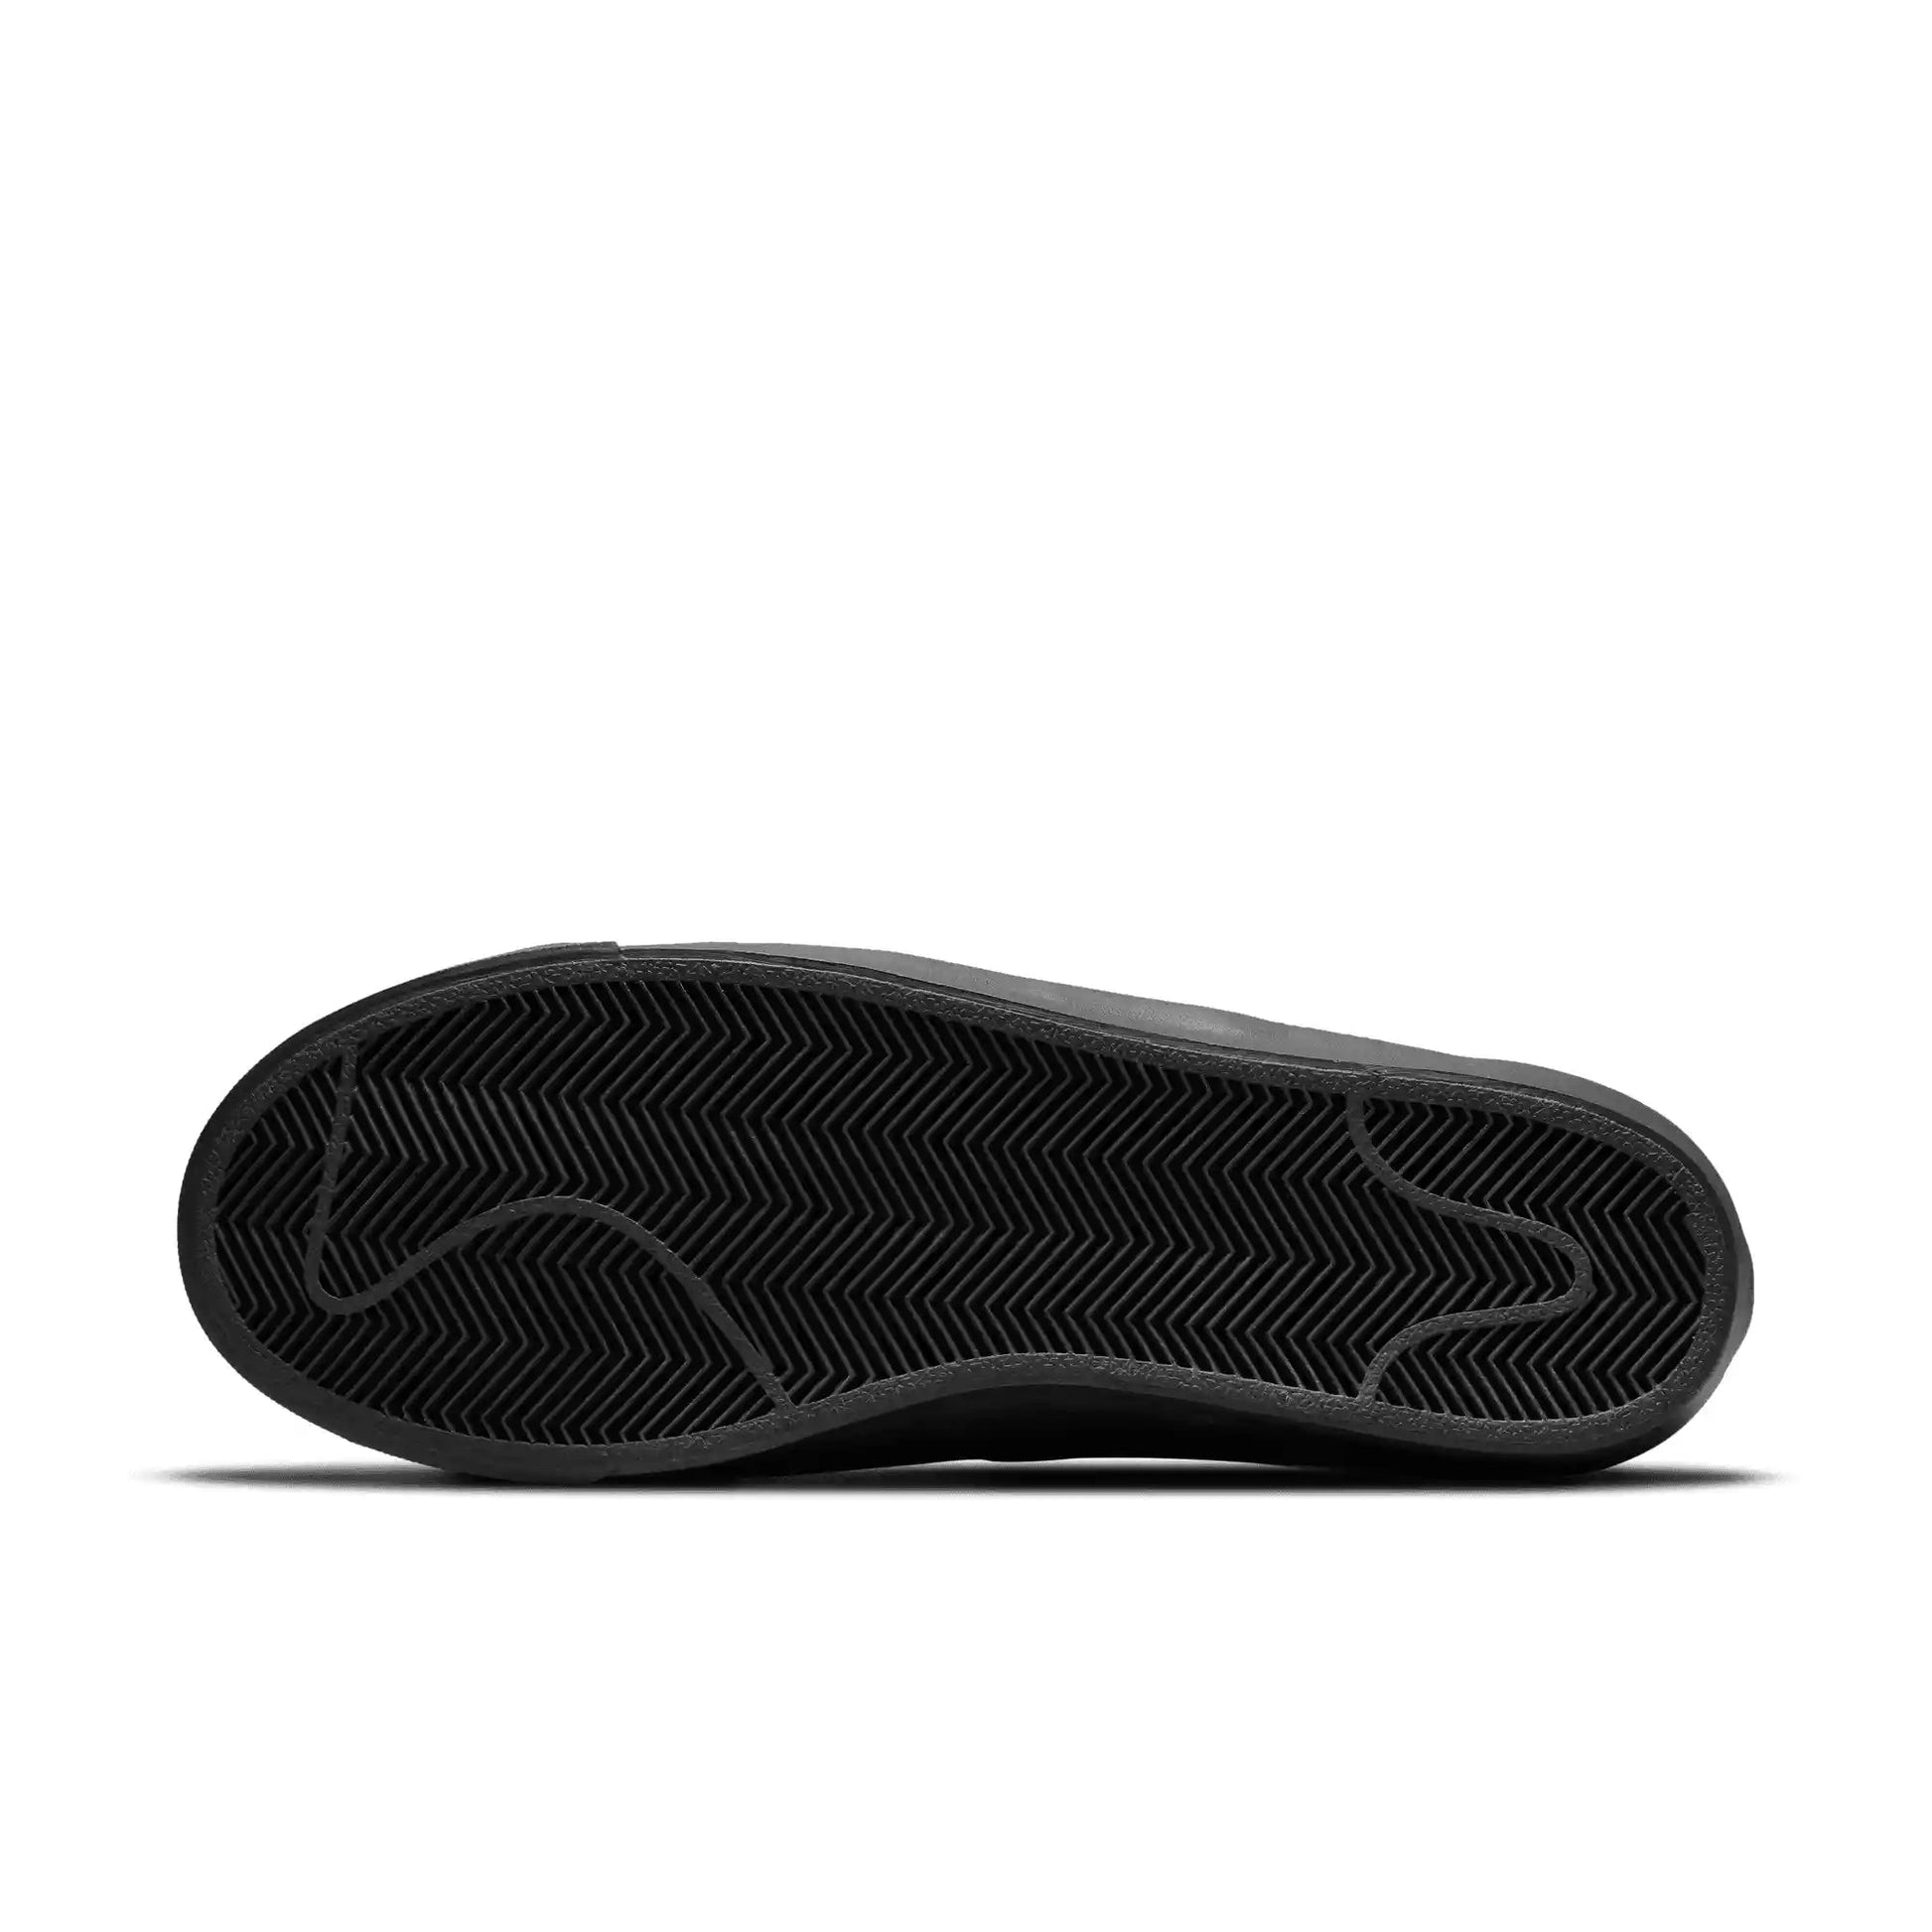 Nike SB Zoom Blazer Low Pro GT, black/black-black-anthracite - Tiki Room Skateboards - 6